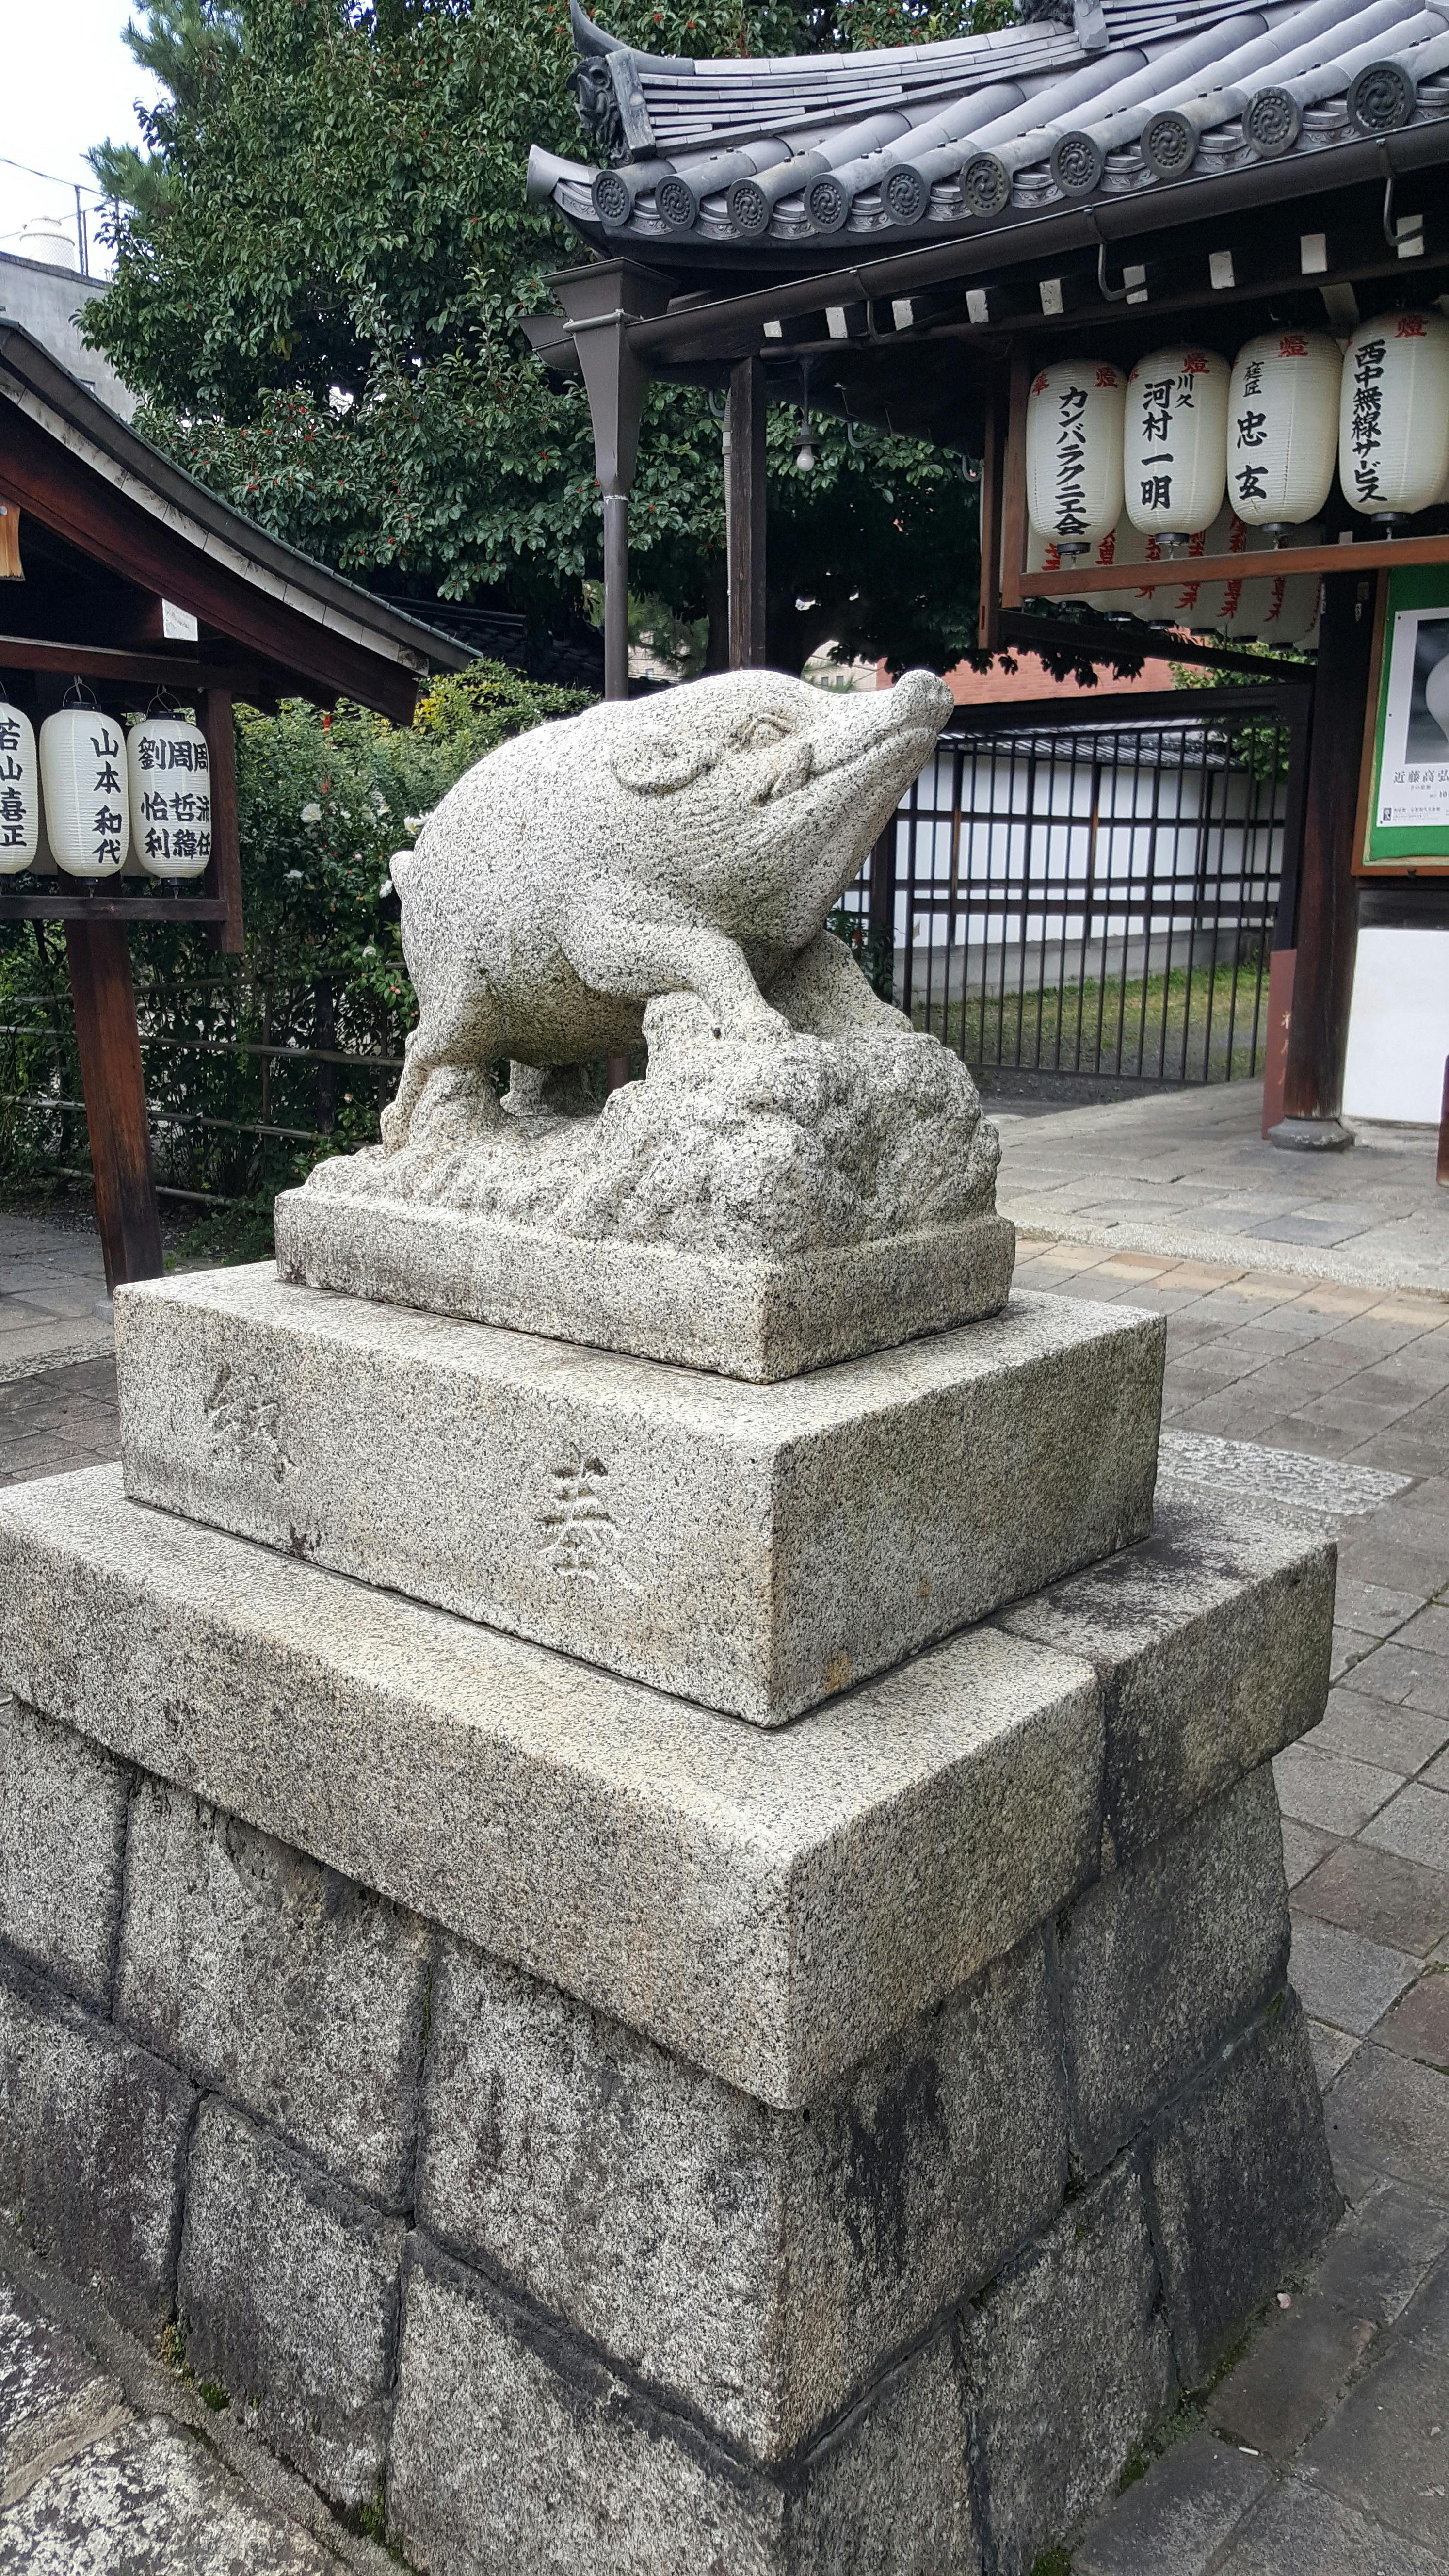 concrete statue near the temple